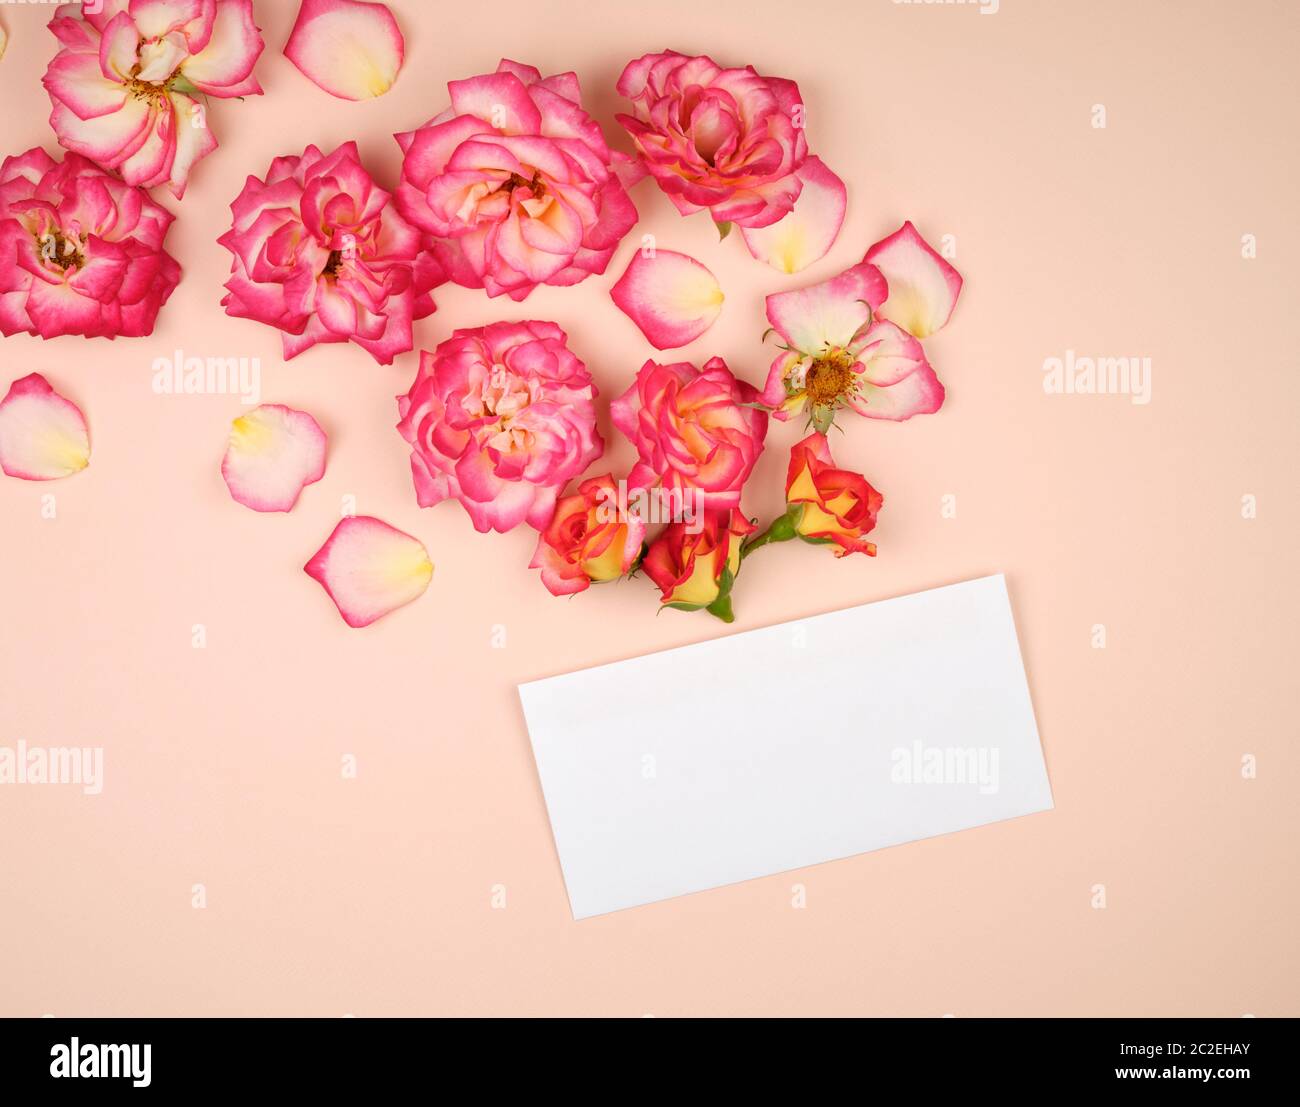 Rosa Rose Knospen und ein weißes Papier Umschlag auf einem bieg Hintergrund, Ansicht von oben, flach Stockfoto